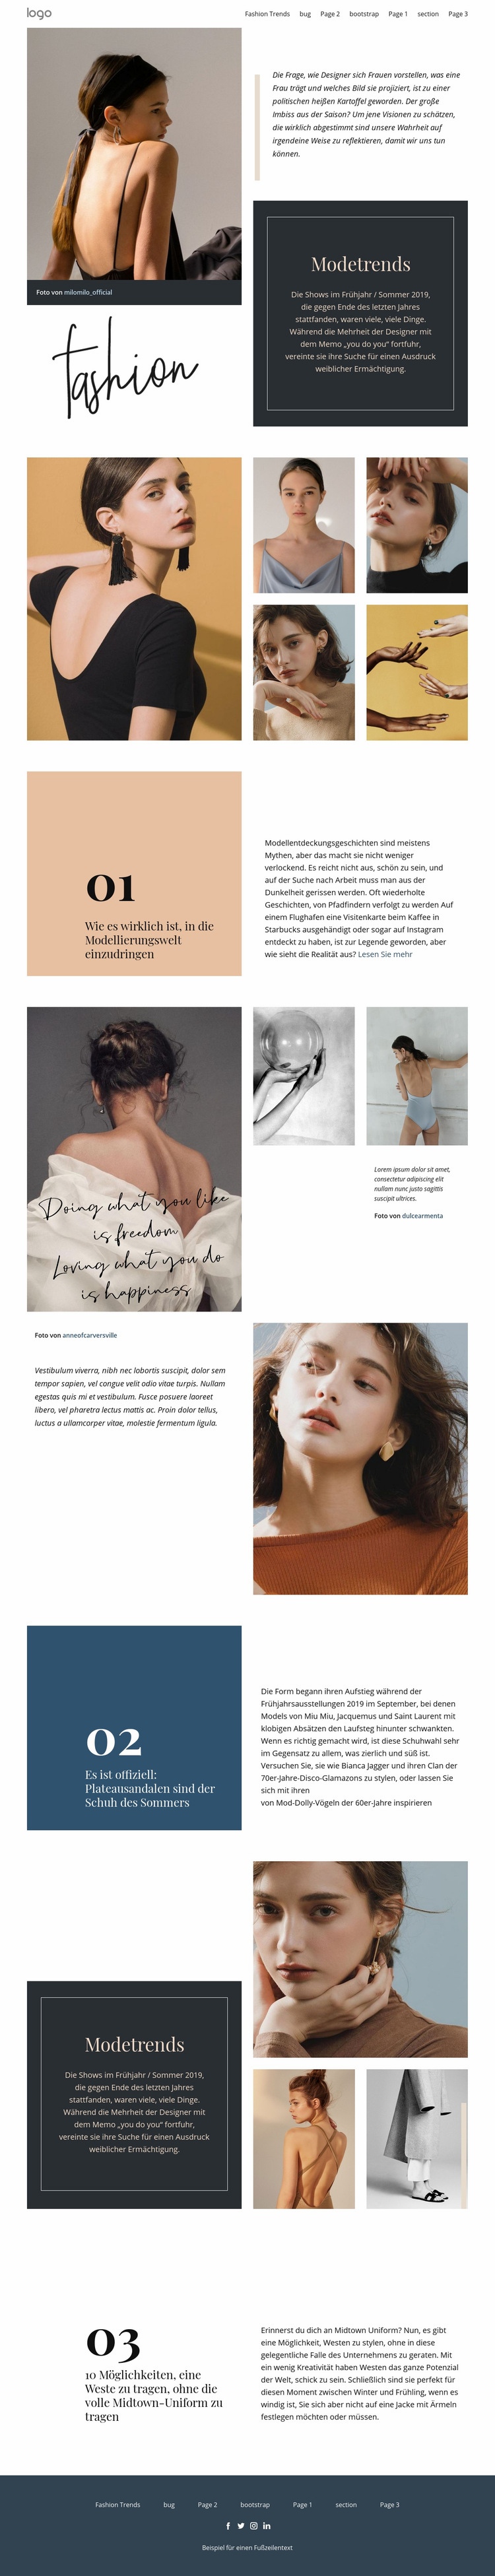 Designer Vision von Mode Website design